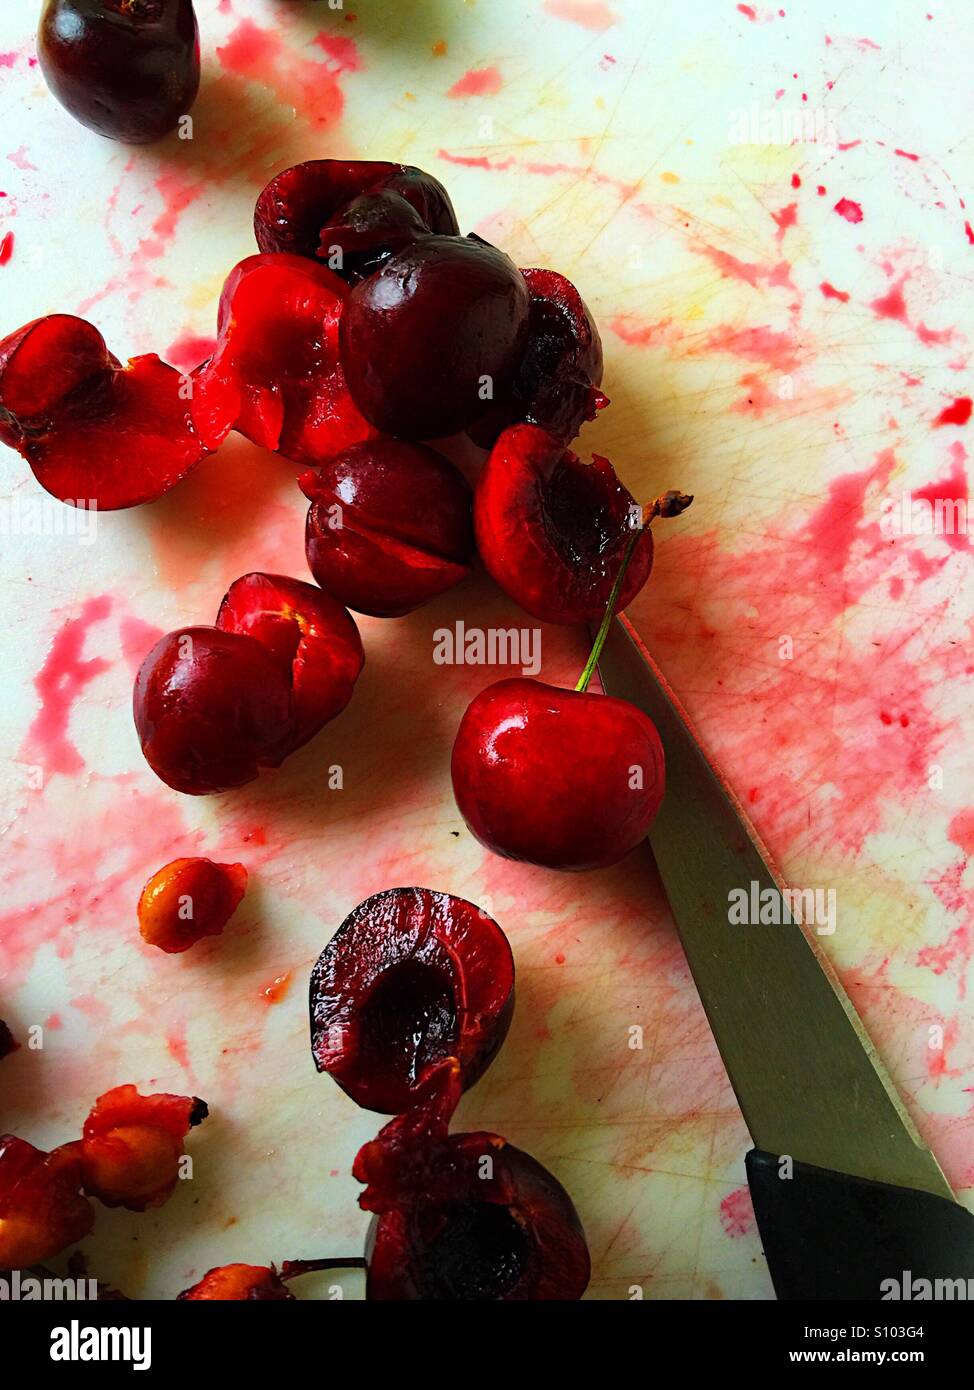 Pitting sweet cherries Stock Photo